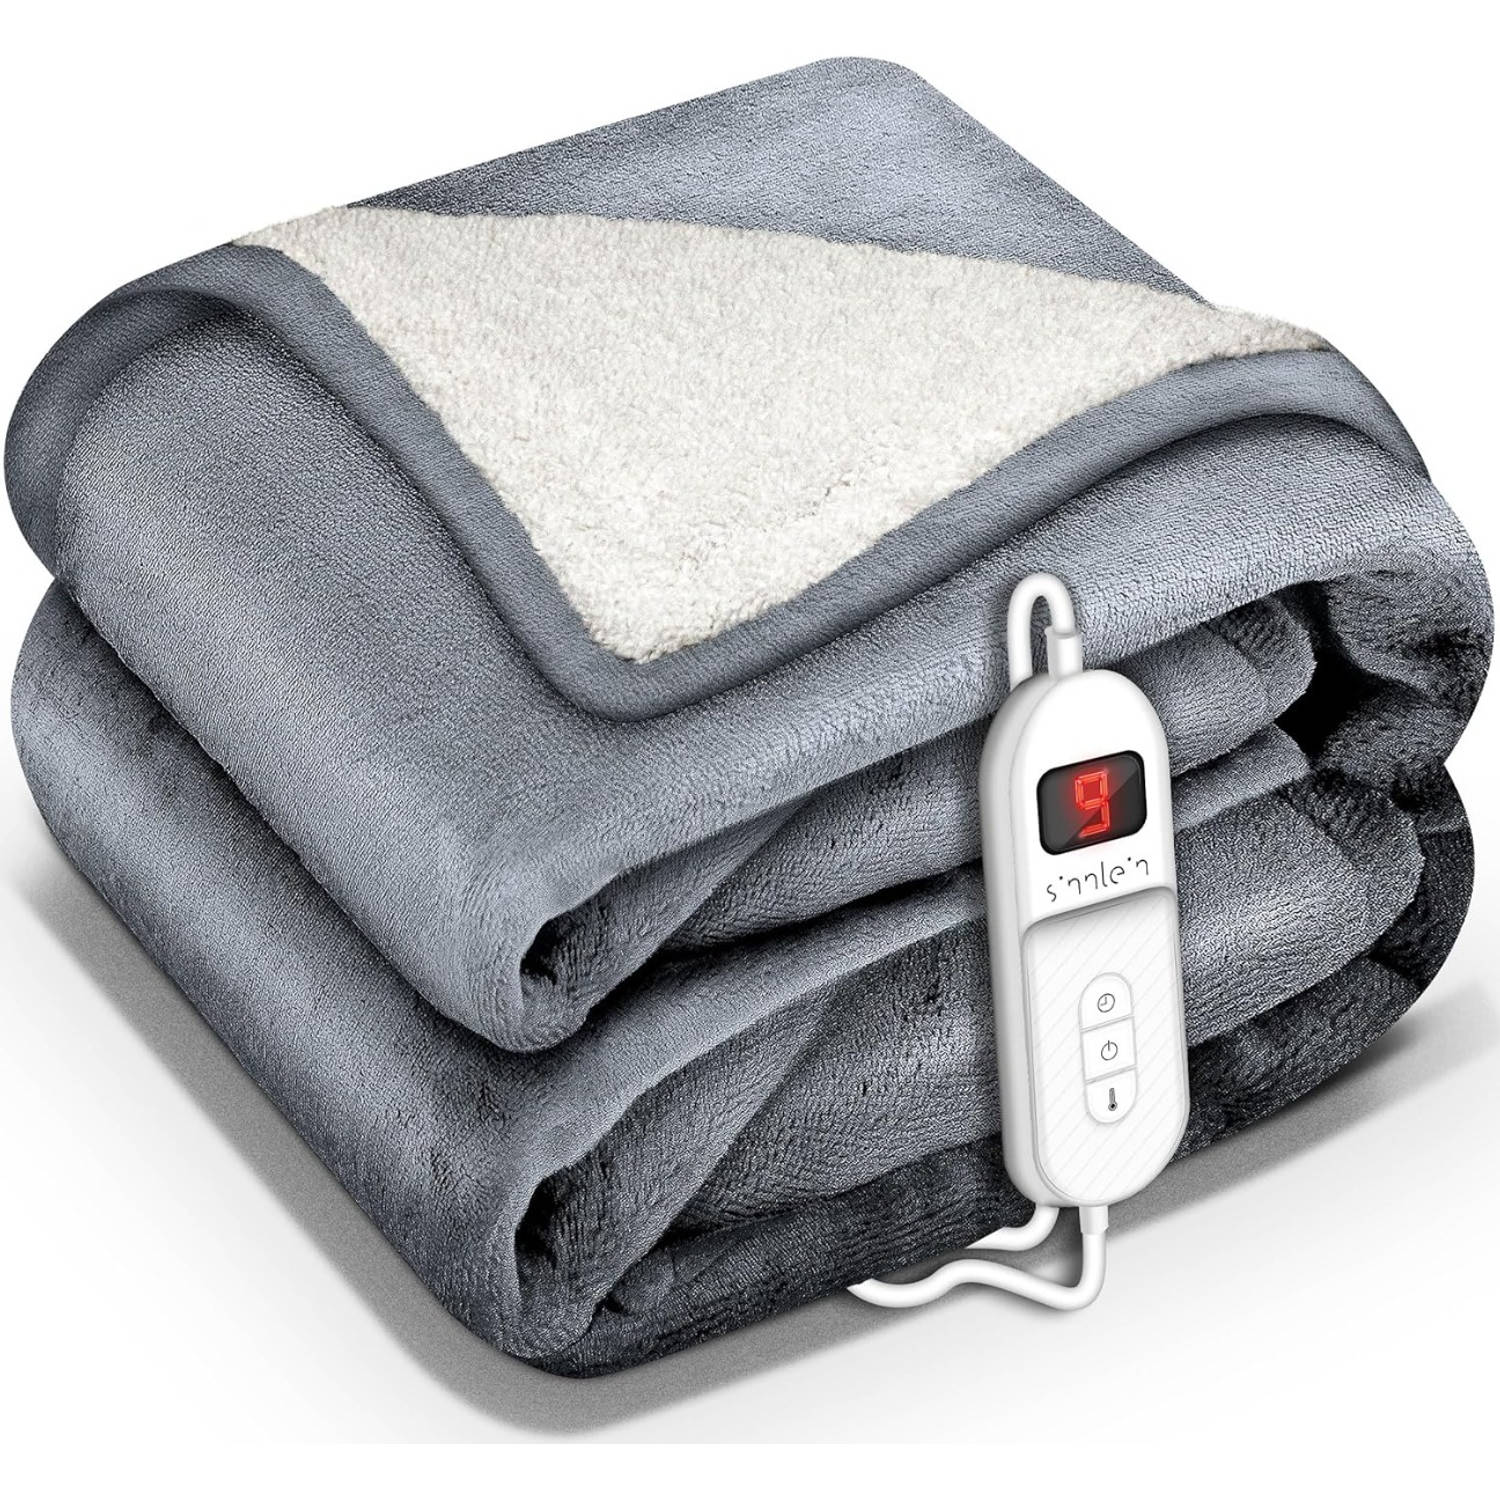 Sinnlein- Elektrische deken met automatische uitschakeling, lichtgrijs, 160x120 cm, warmtedeken met 9 temperatuurnive...